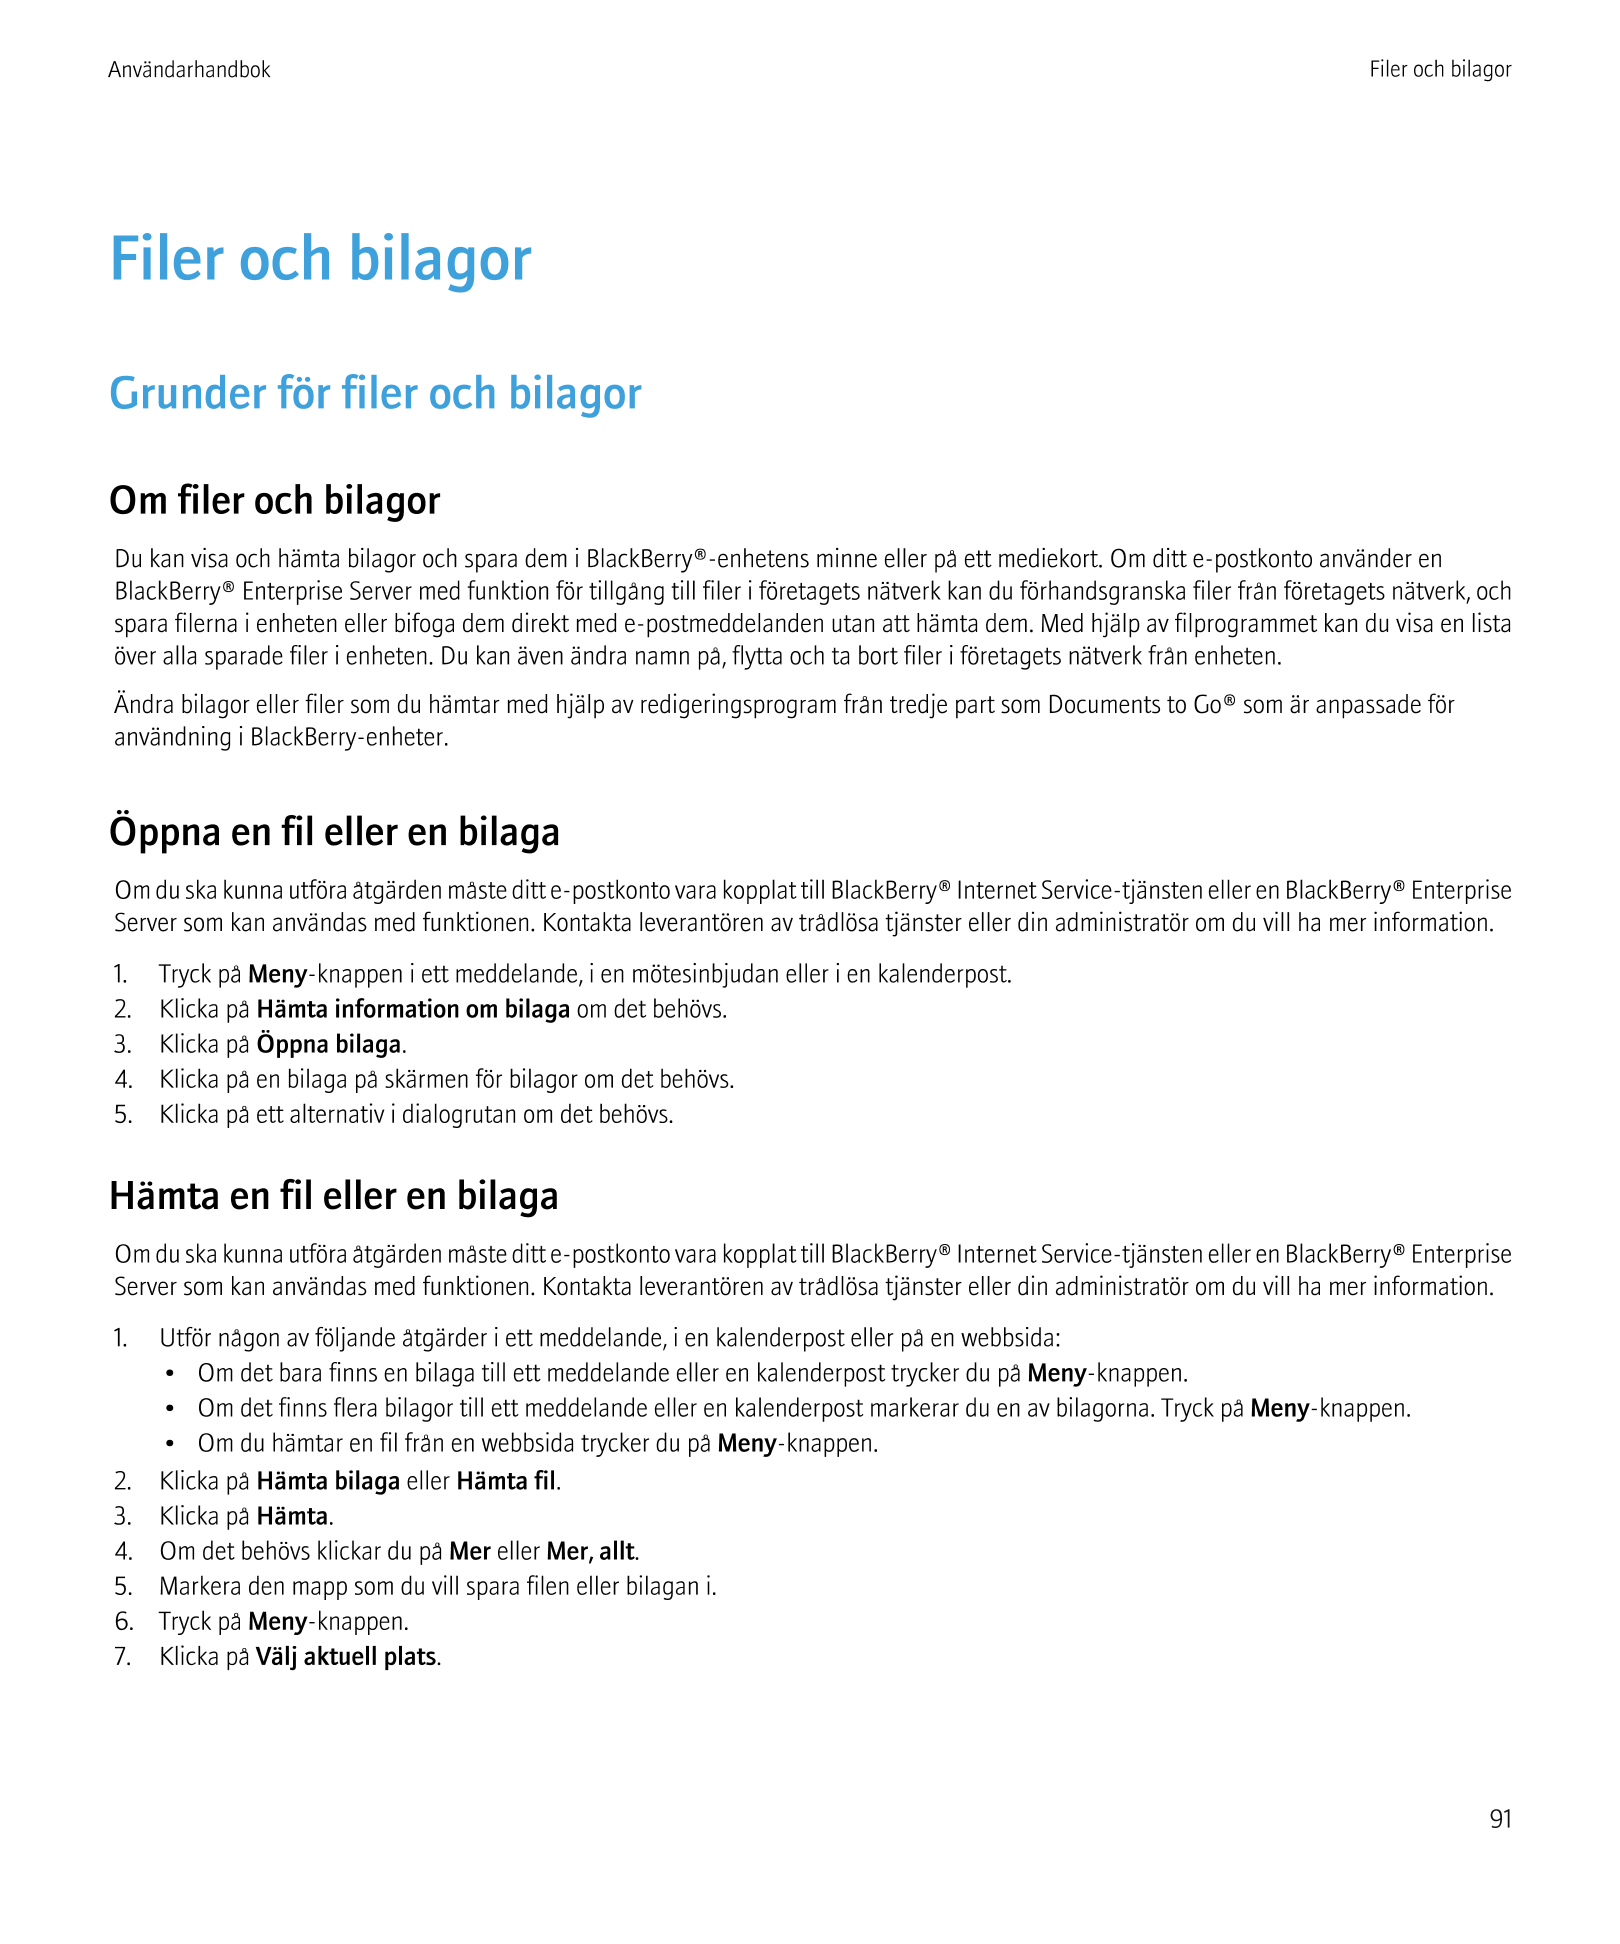 Användarhandbok Filer och bilagor
Filer och bilagor
Grunder för filer och bilagor
Om filer och bilagor
Du kan visa och hämta bil